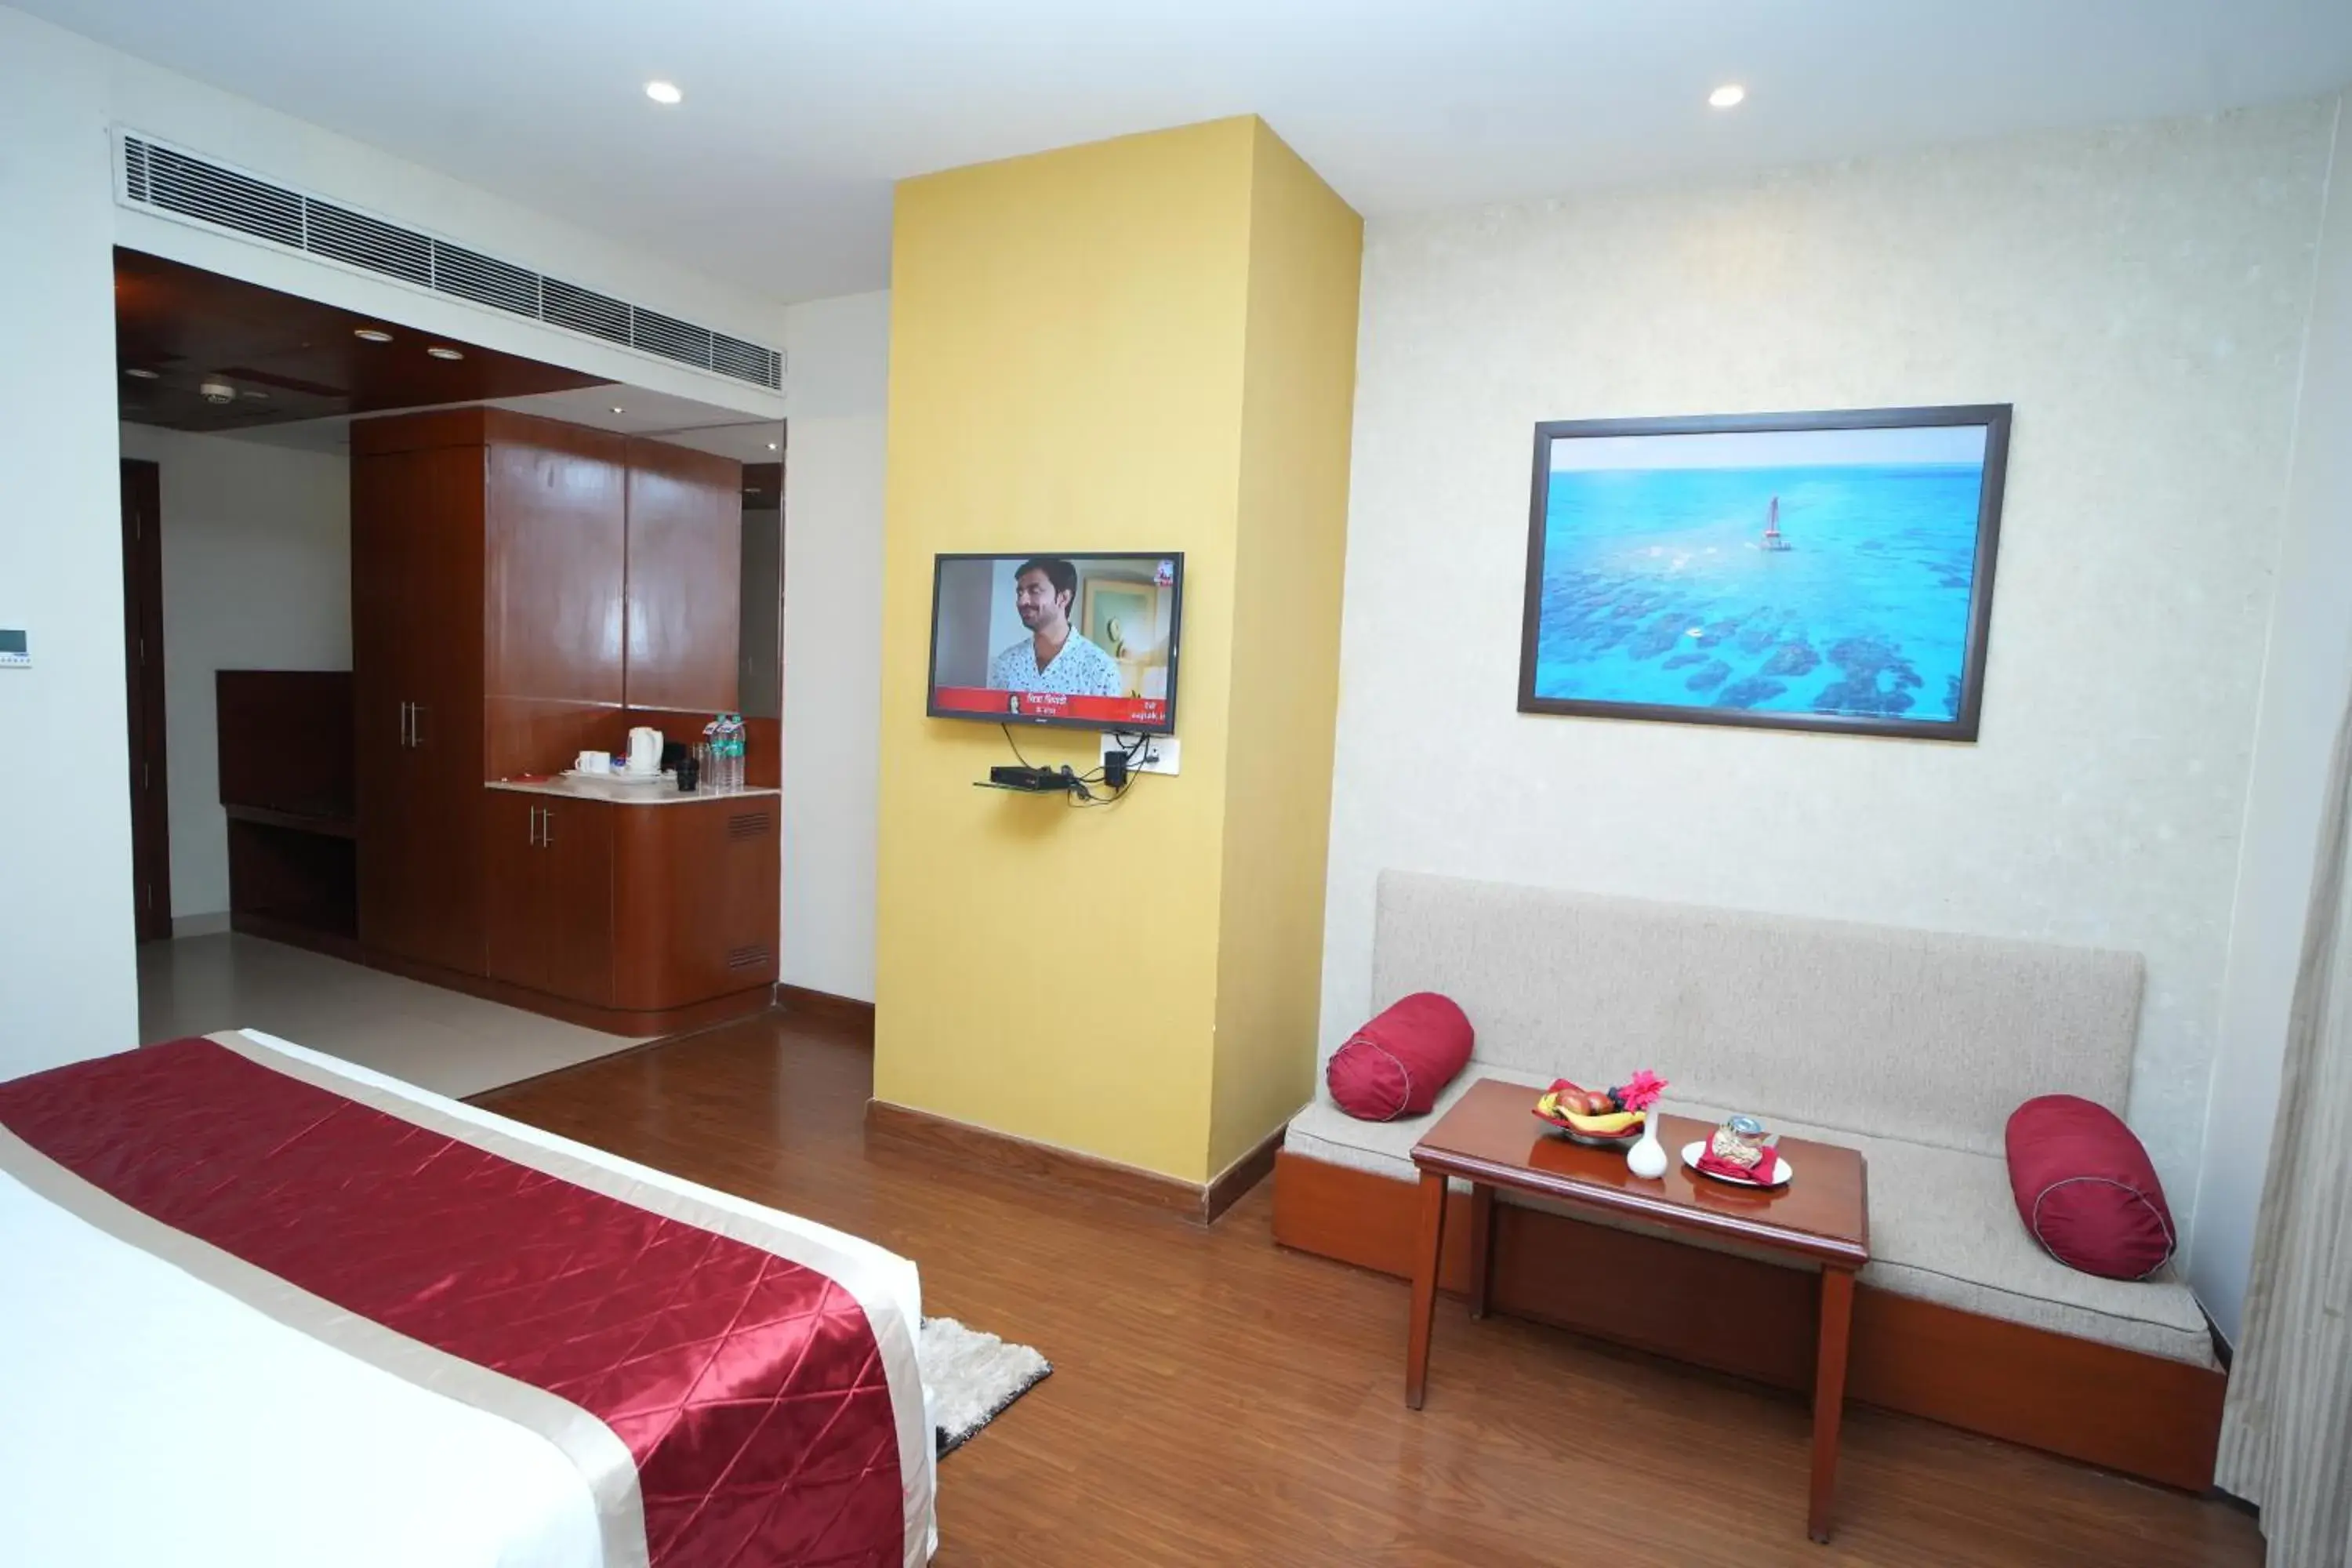 Bedroom, TV/Entertainment Center in Siesta Hitech Hotel